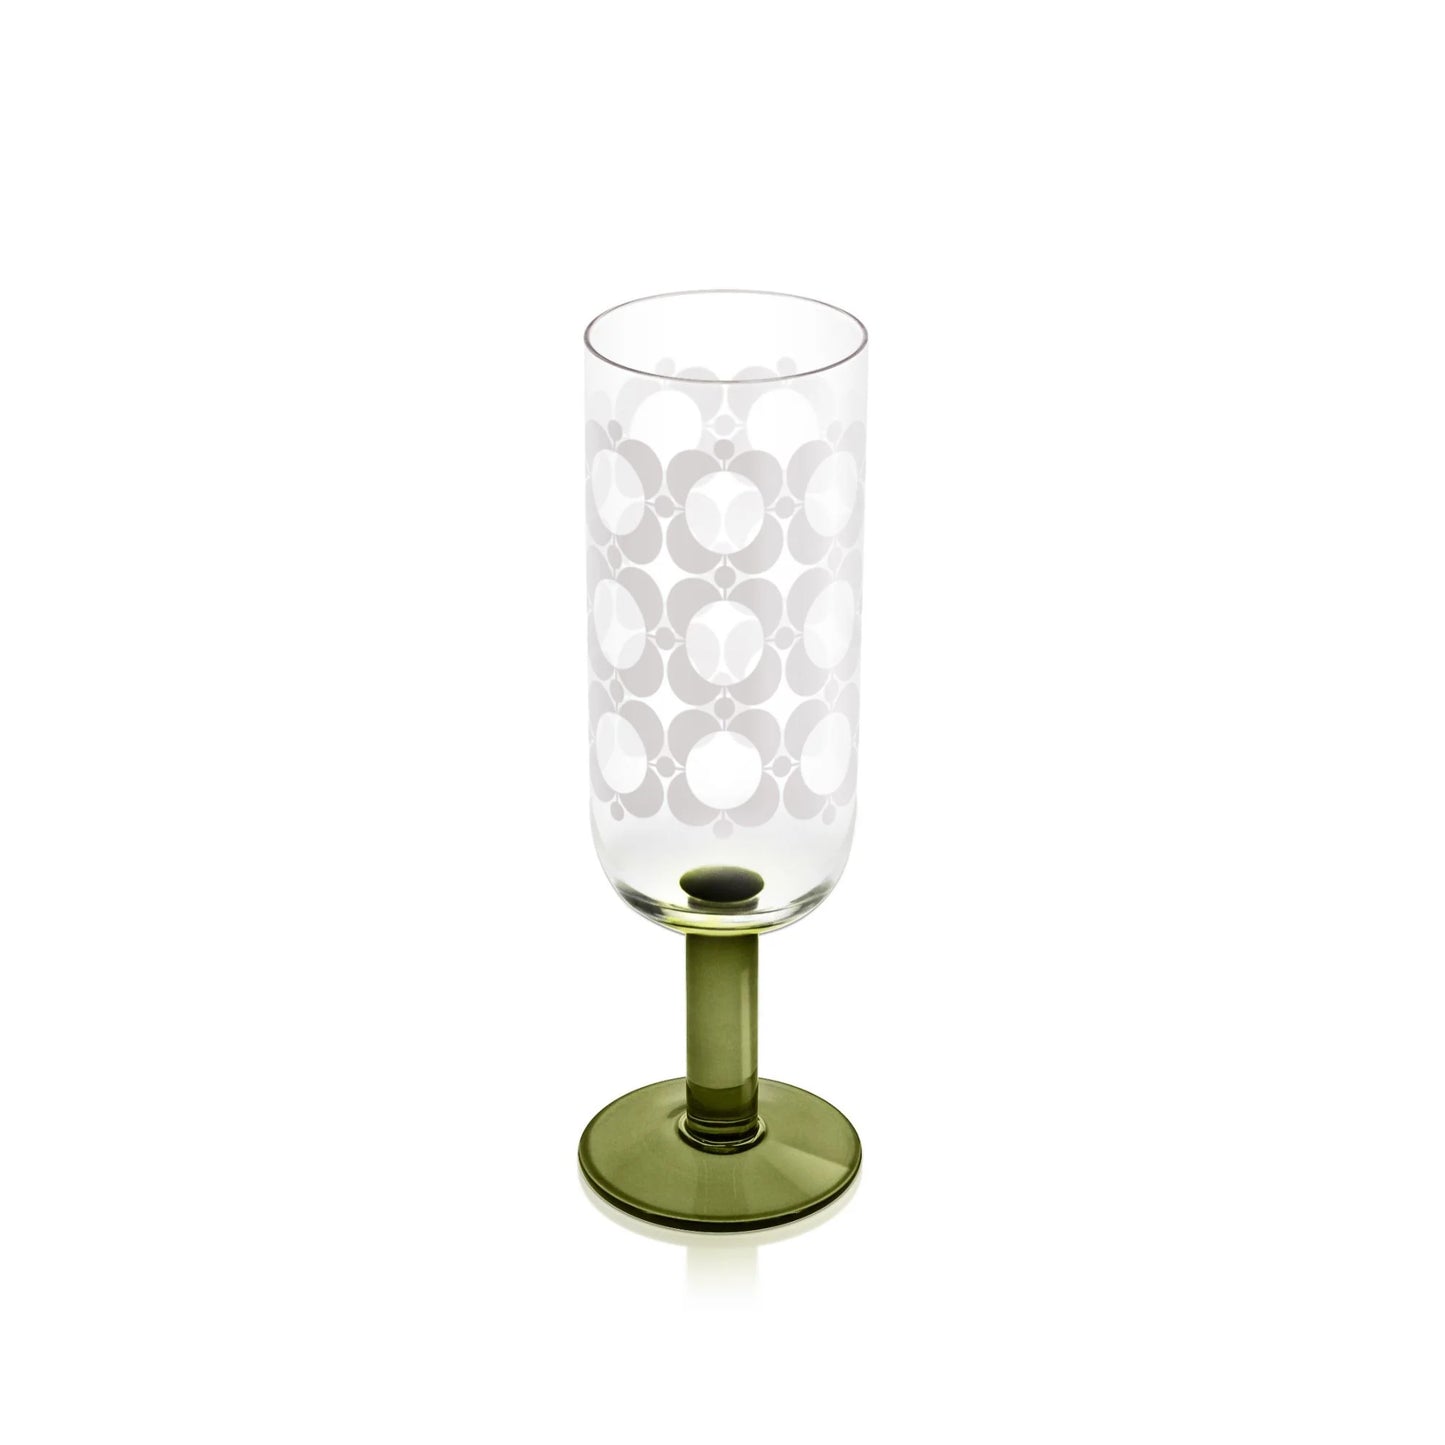 Orla Kiely Atomic Flower Champagne Glasses Set of 4 - Green